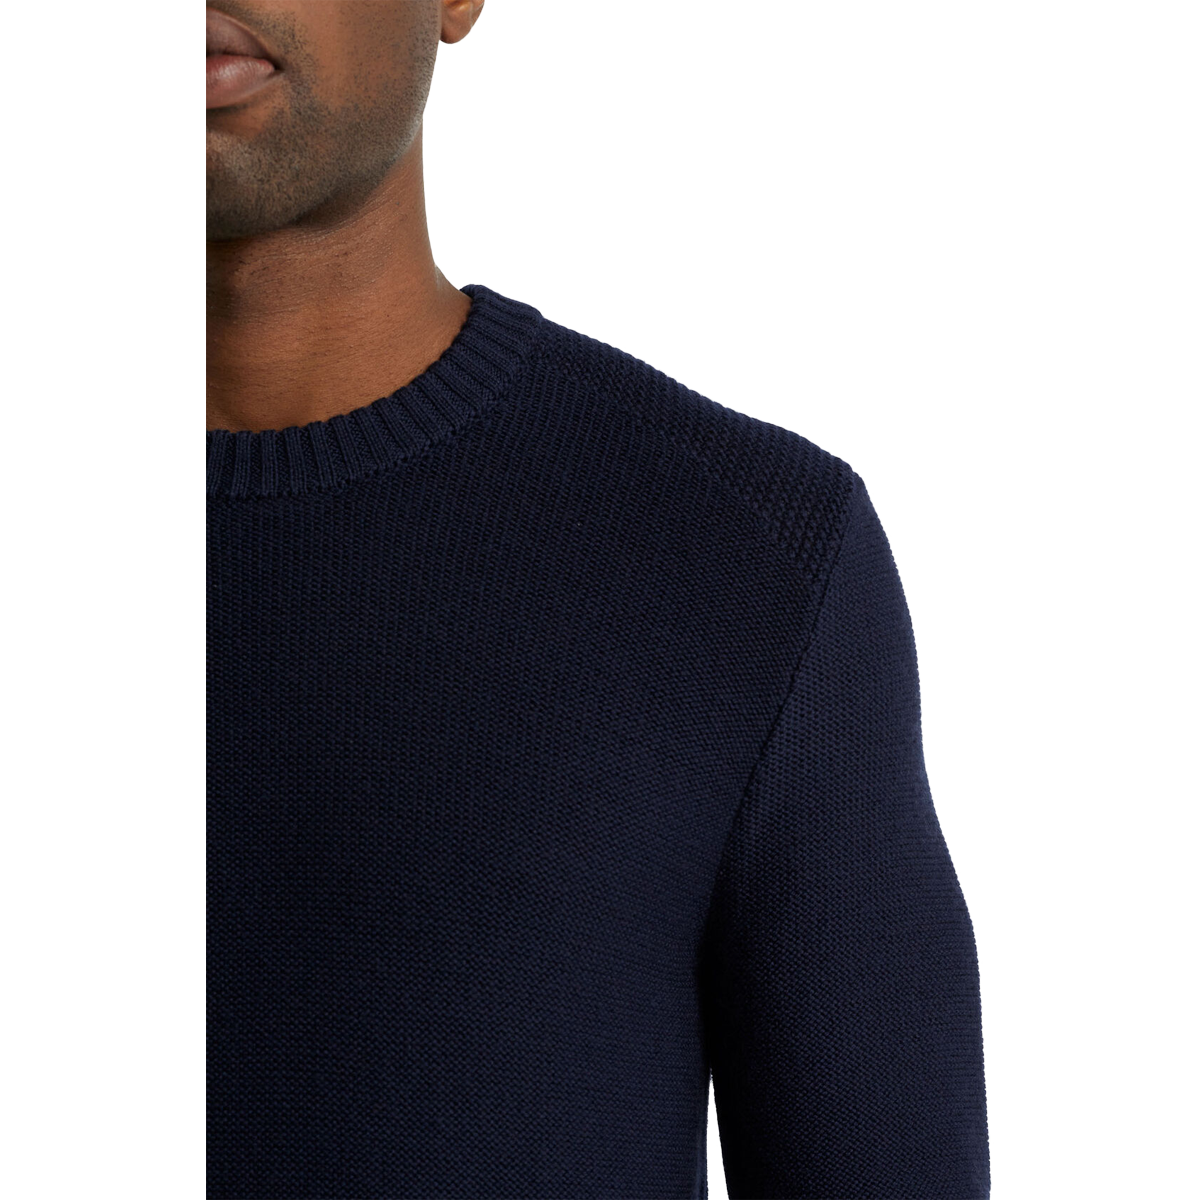 Men's Merino Waypoint Crewe Sweater alternate view